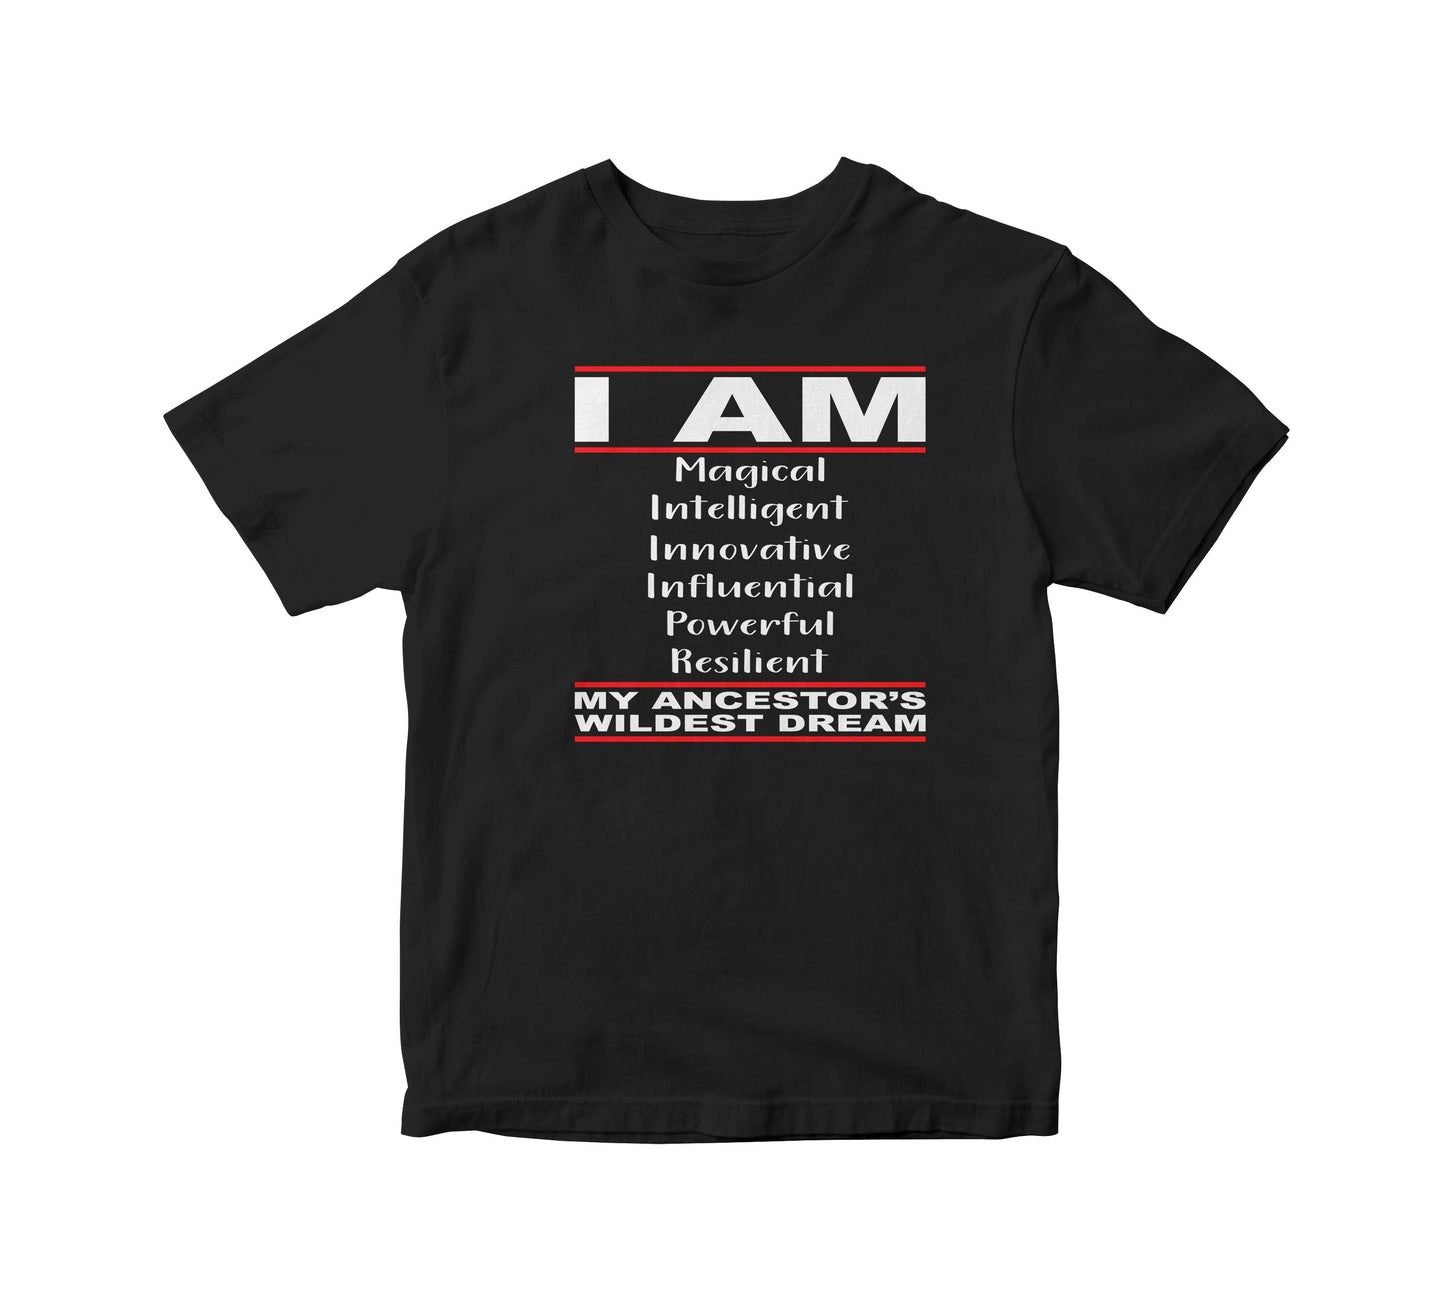 My Ancestors Wildest Dreams Adult Unisex T-Shirt